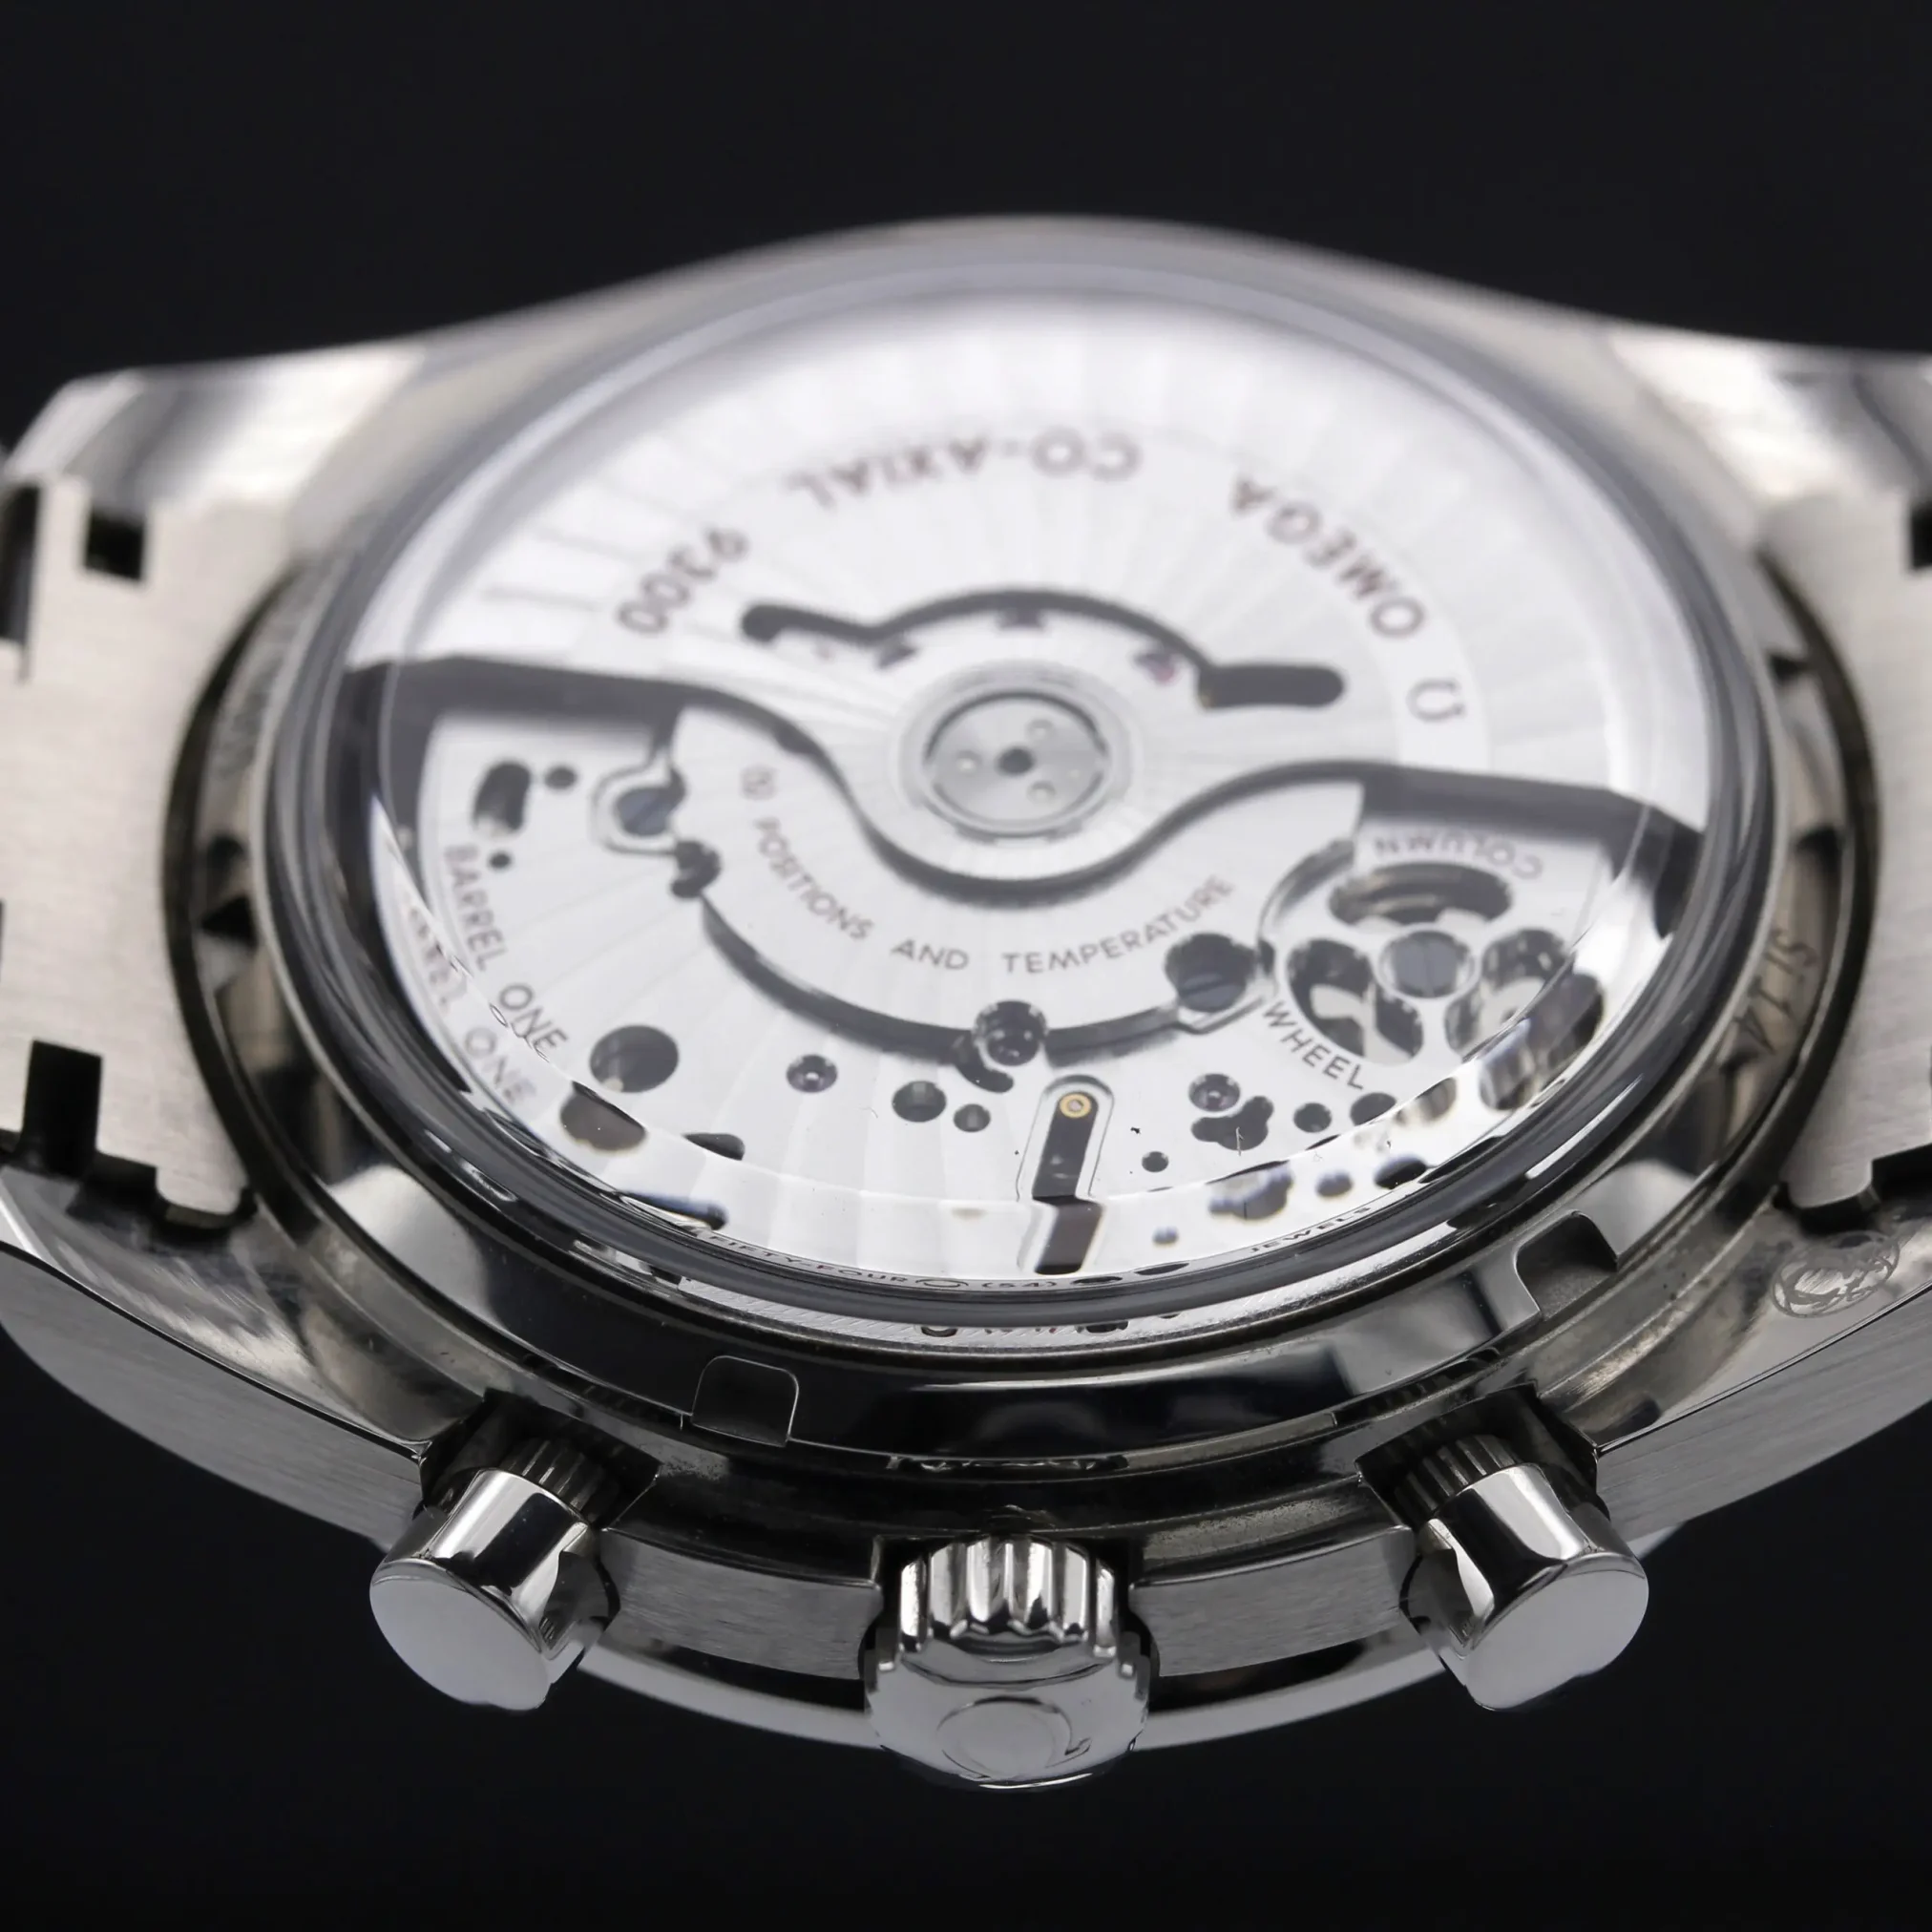 Đồng hồ Omega Seamaster Two Counters Chronometer Chronograph 311.90.44.51.03.001 mặt số màu xanh. Thiết kế lộ cơ. Dây đeo và thân vỏ bằng thép.